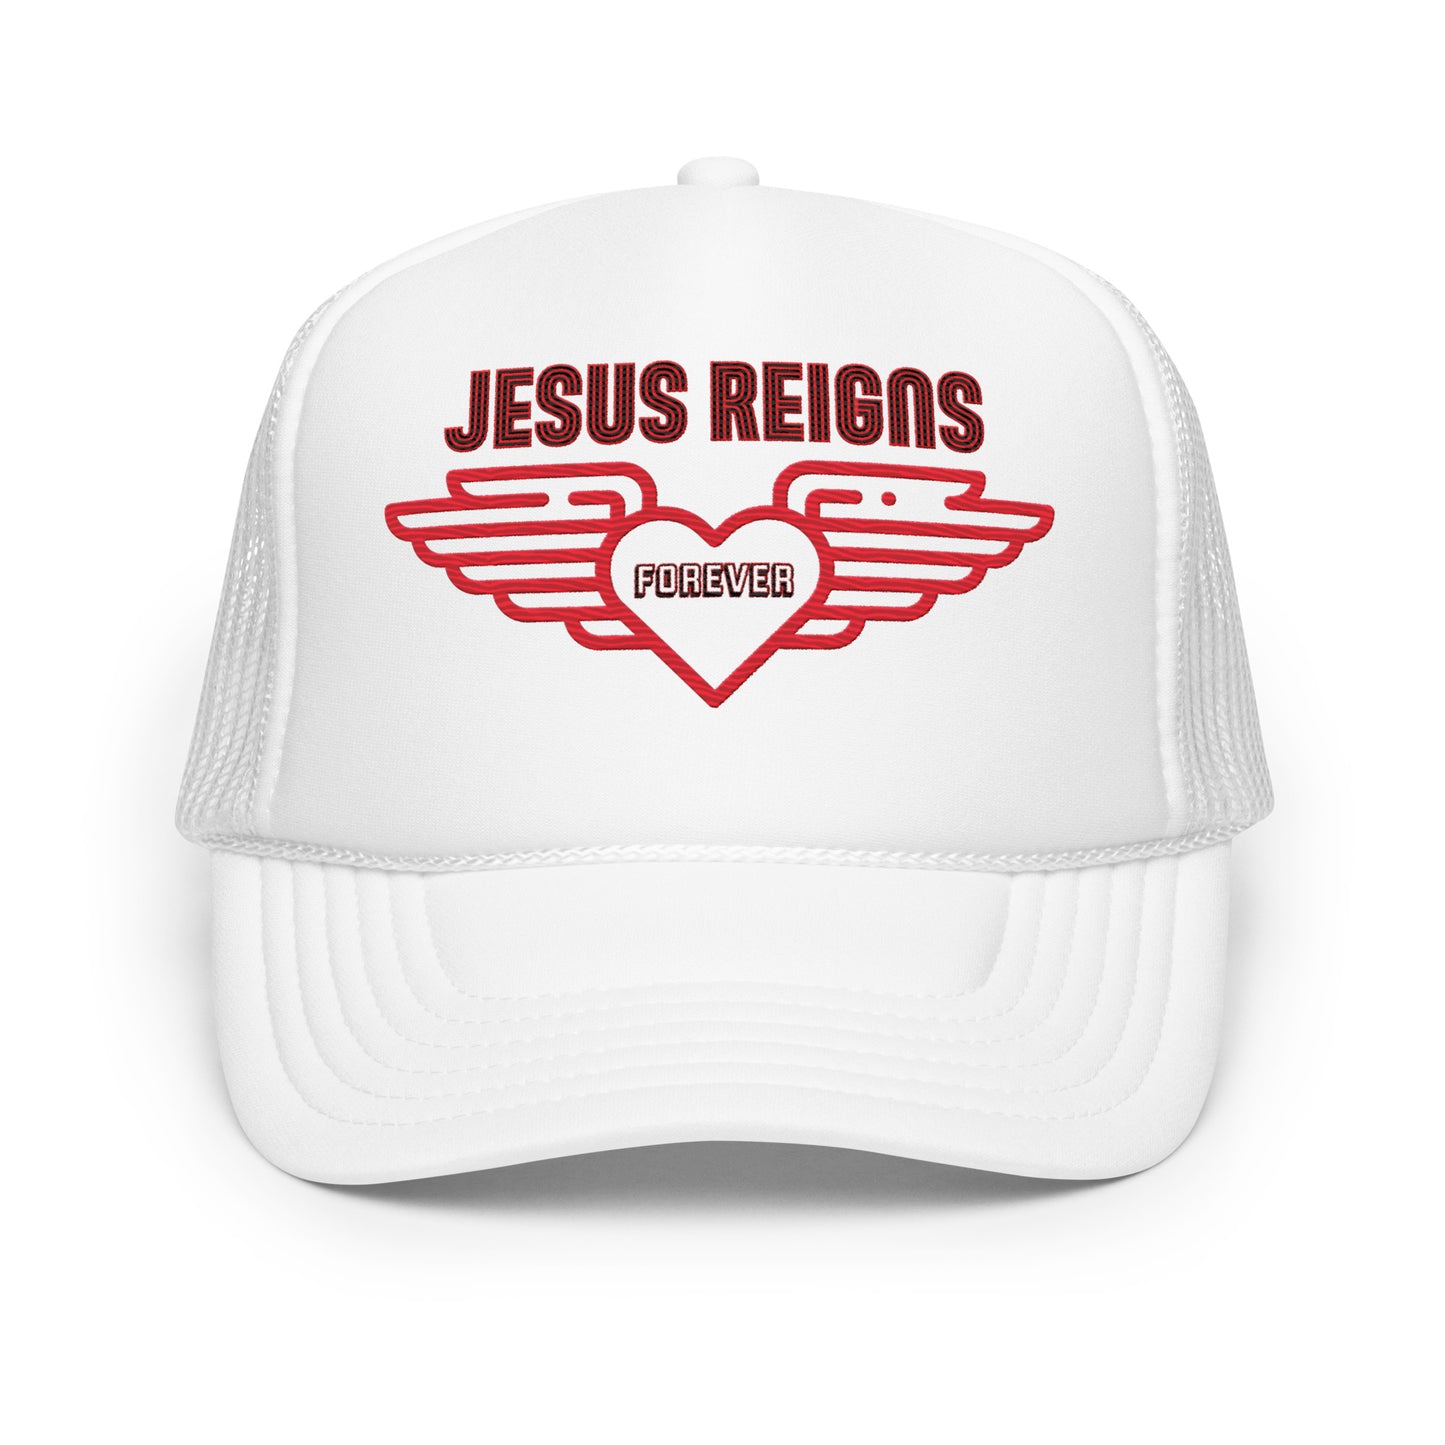 JESUS REIGNS FOREVER- Foam trucker hat